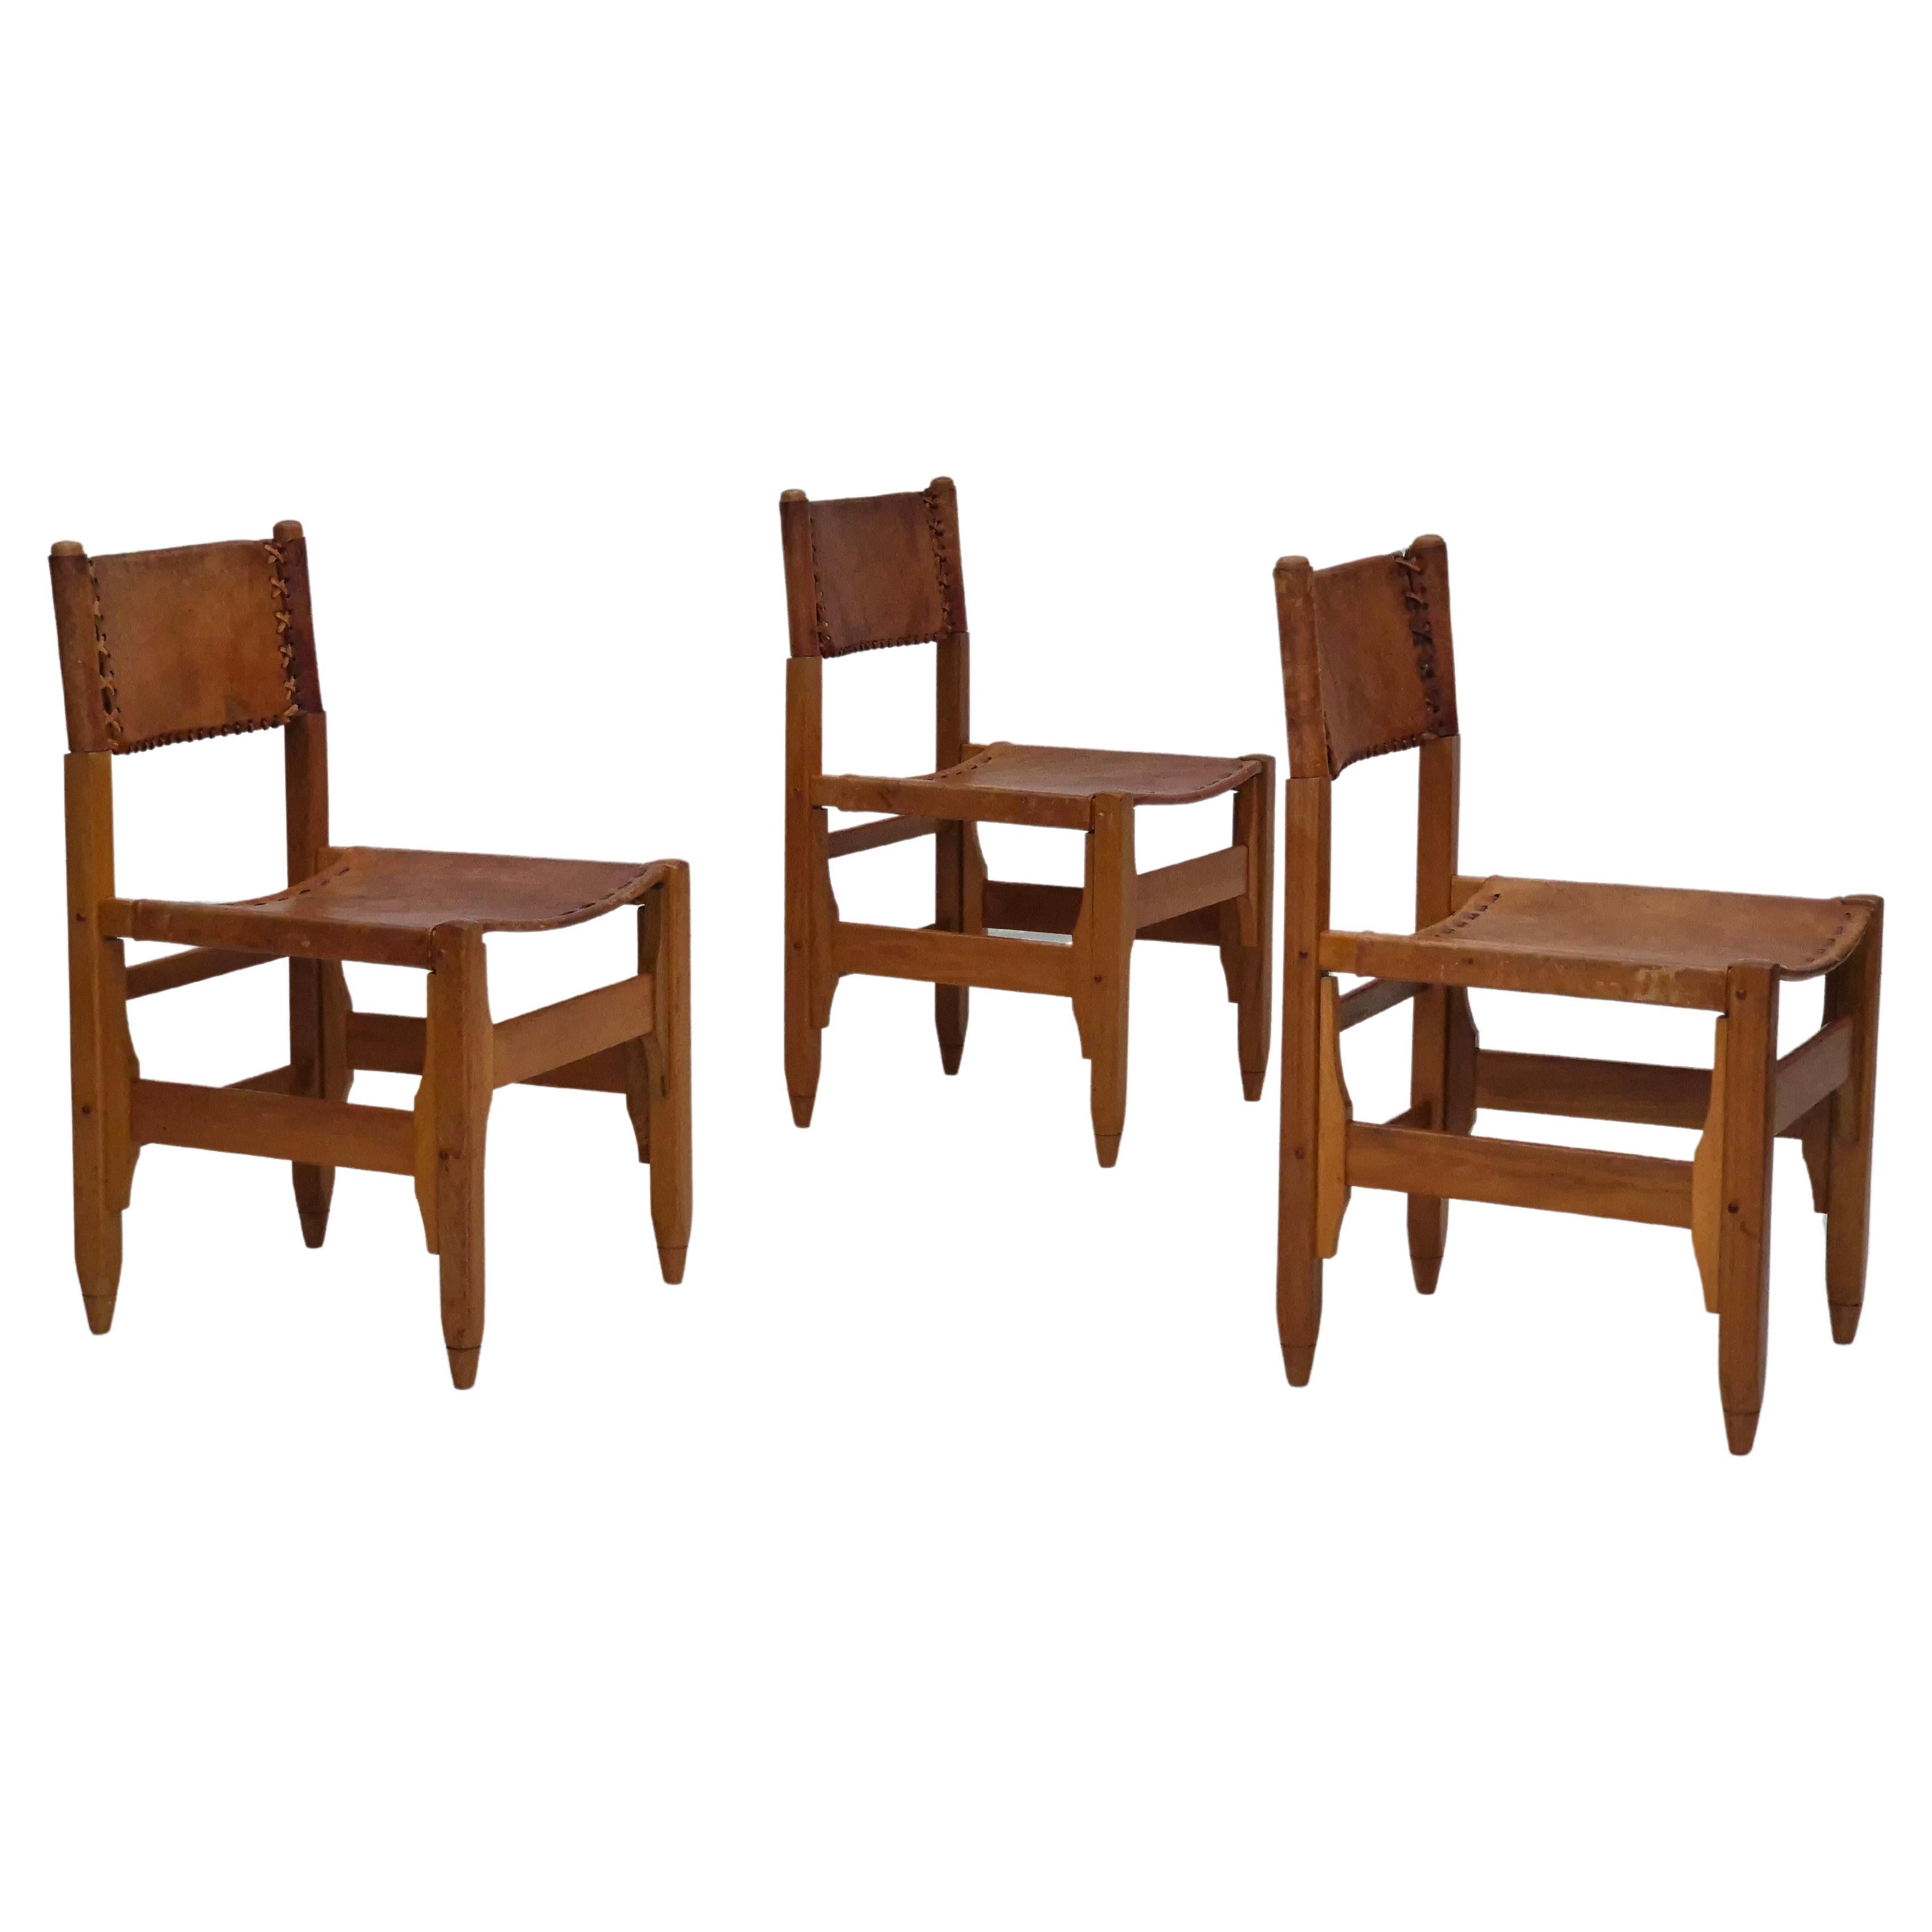 1960s, Werner Biermann design for Arte Sano, set of three chairs, original.